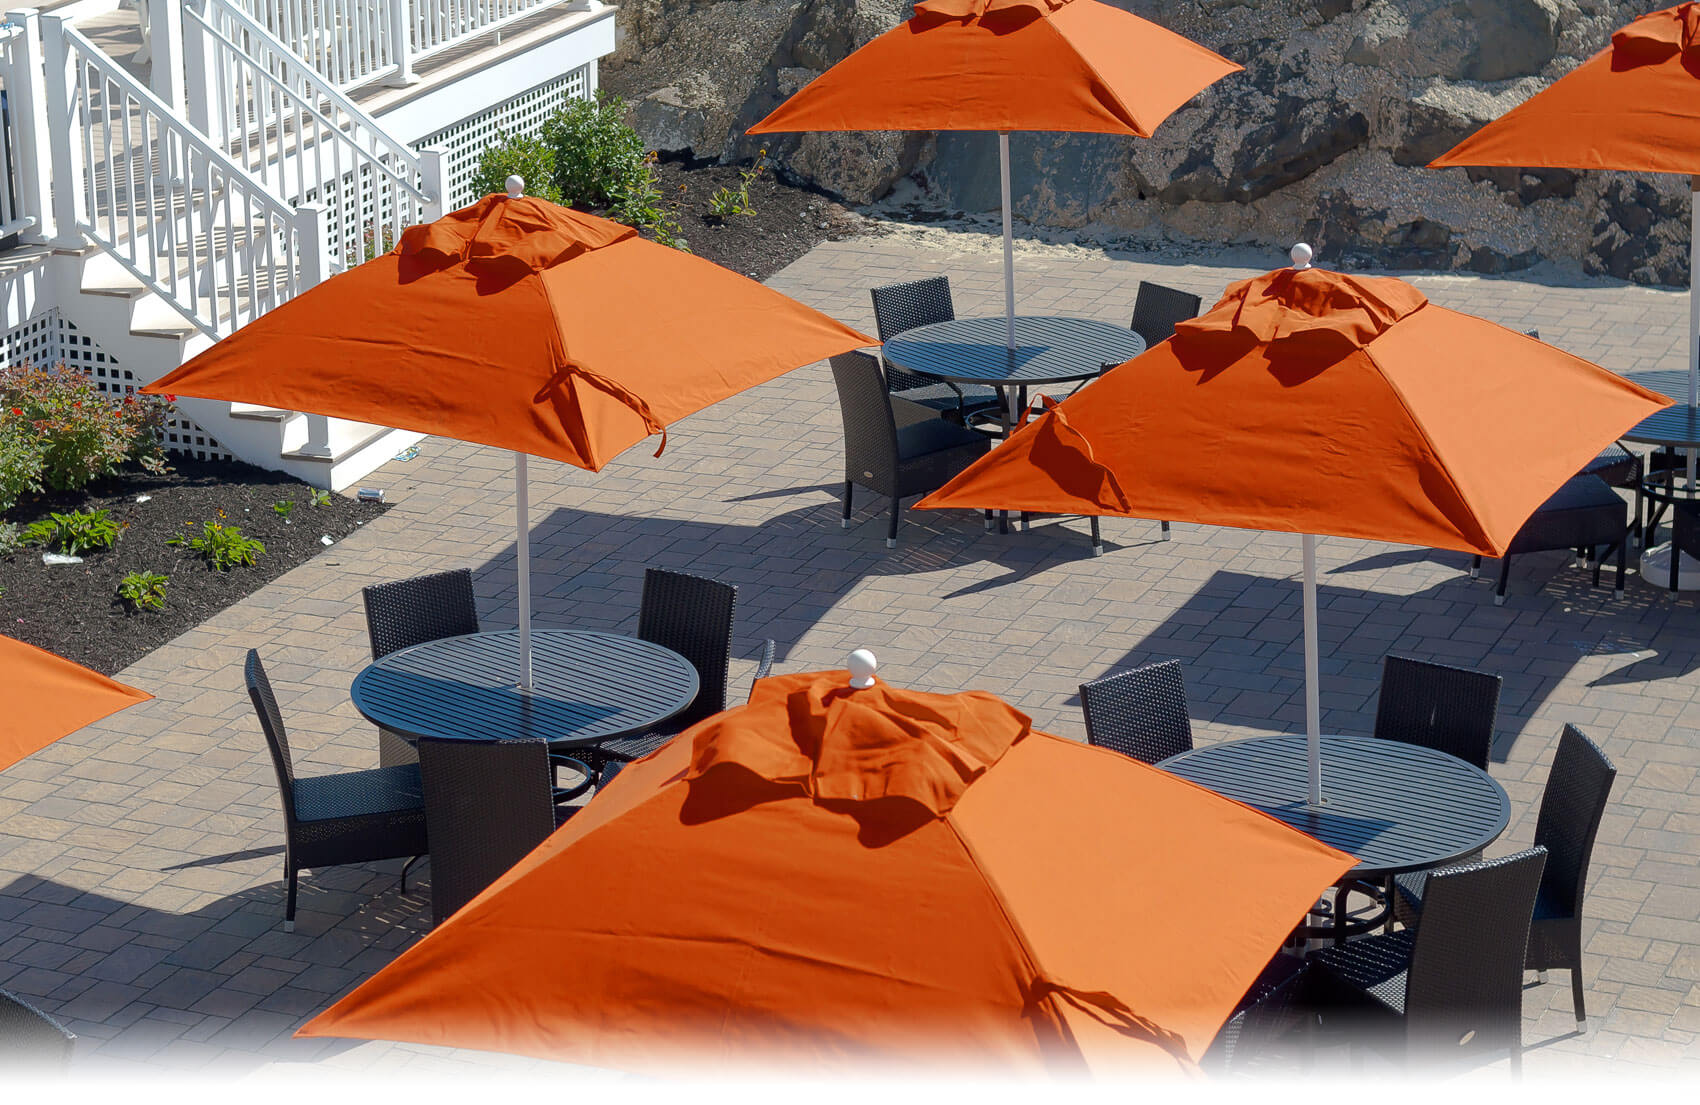 Orange Frankford Market Umbrellas set up over tables at a large property